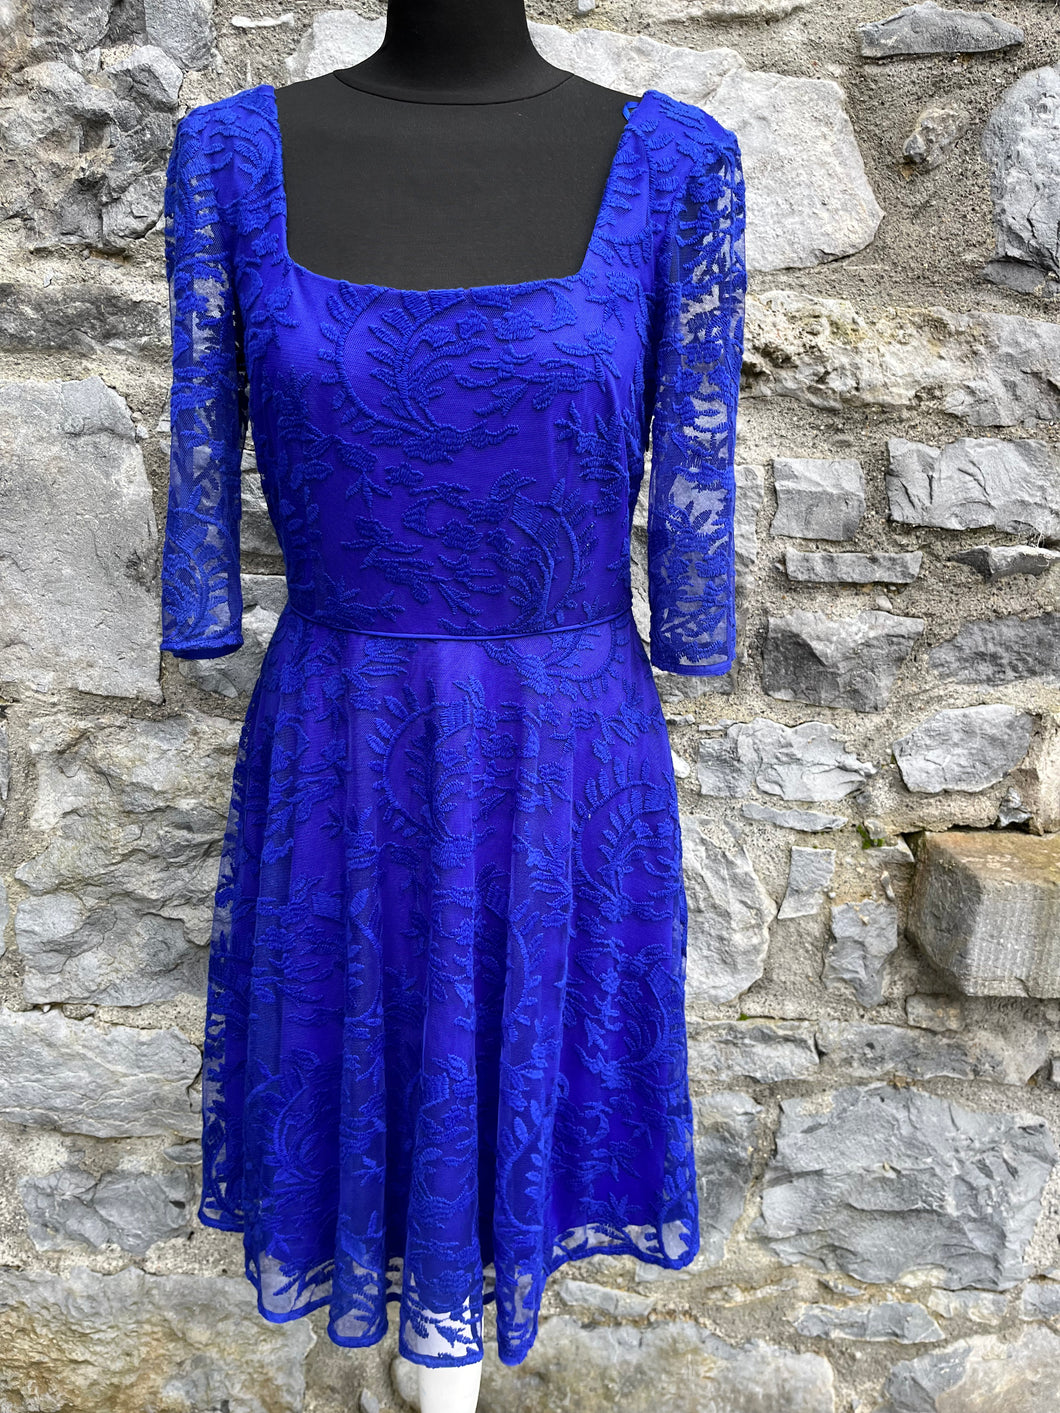 Blue lace dress uk 8-10